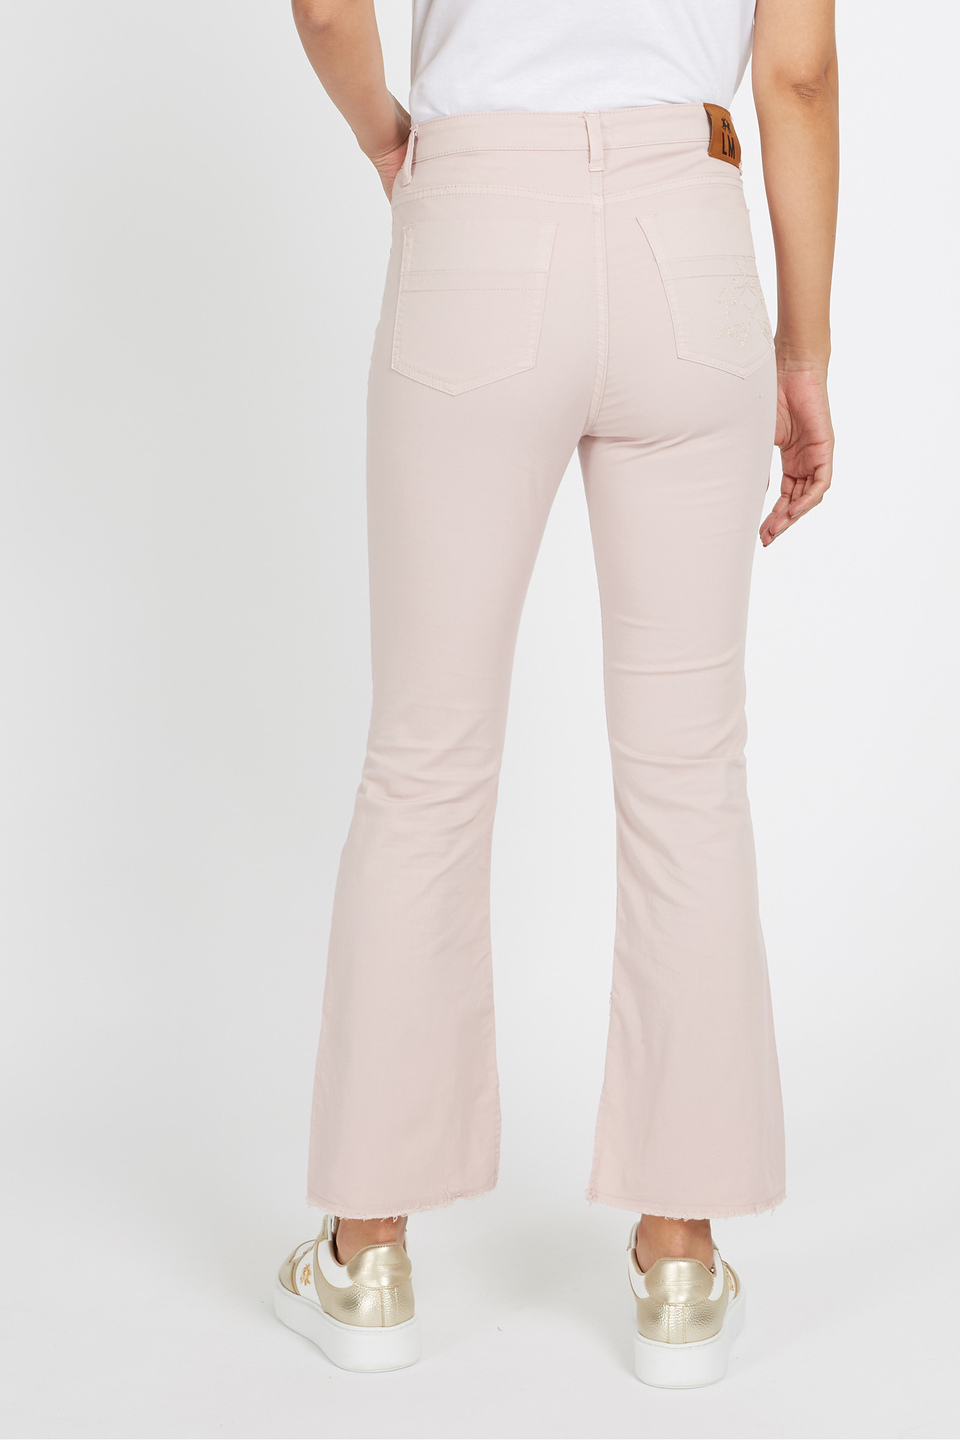 Pantalone da donna in cotone elasticizzato 5 tasche regular fit - Vane | La Martina - Official Online Shop